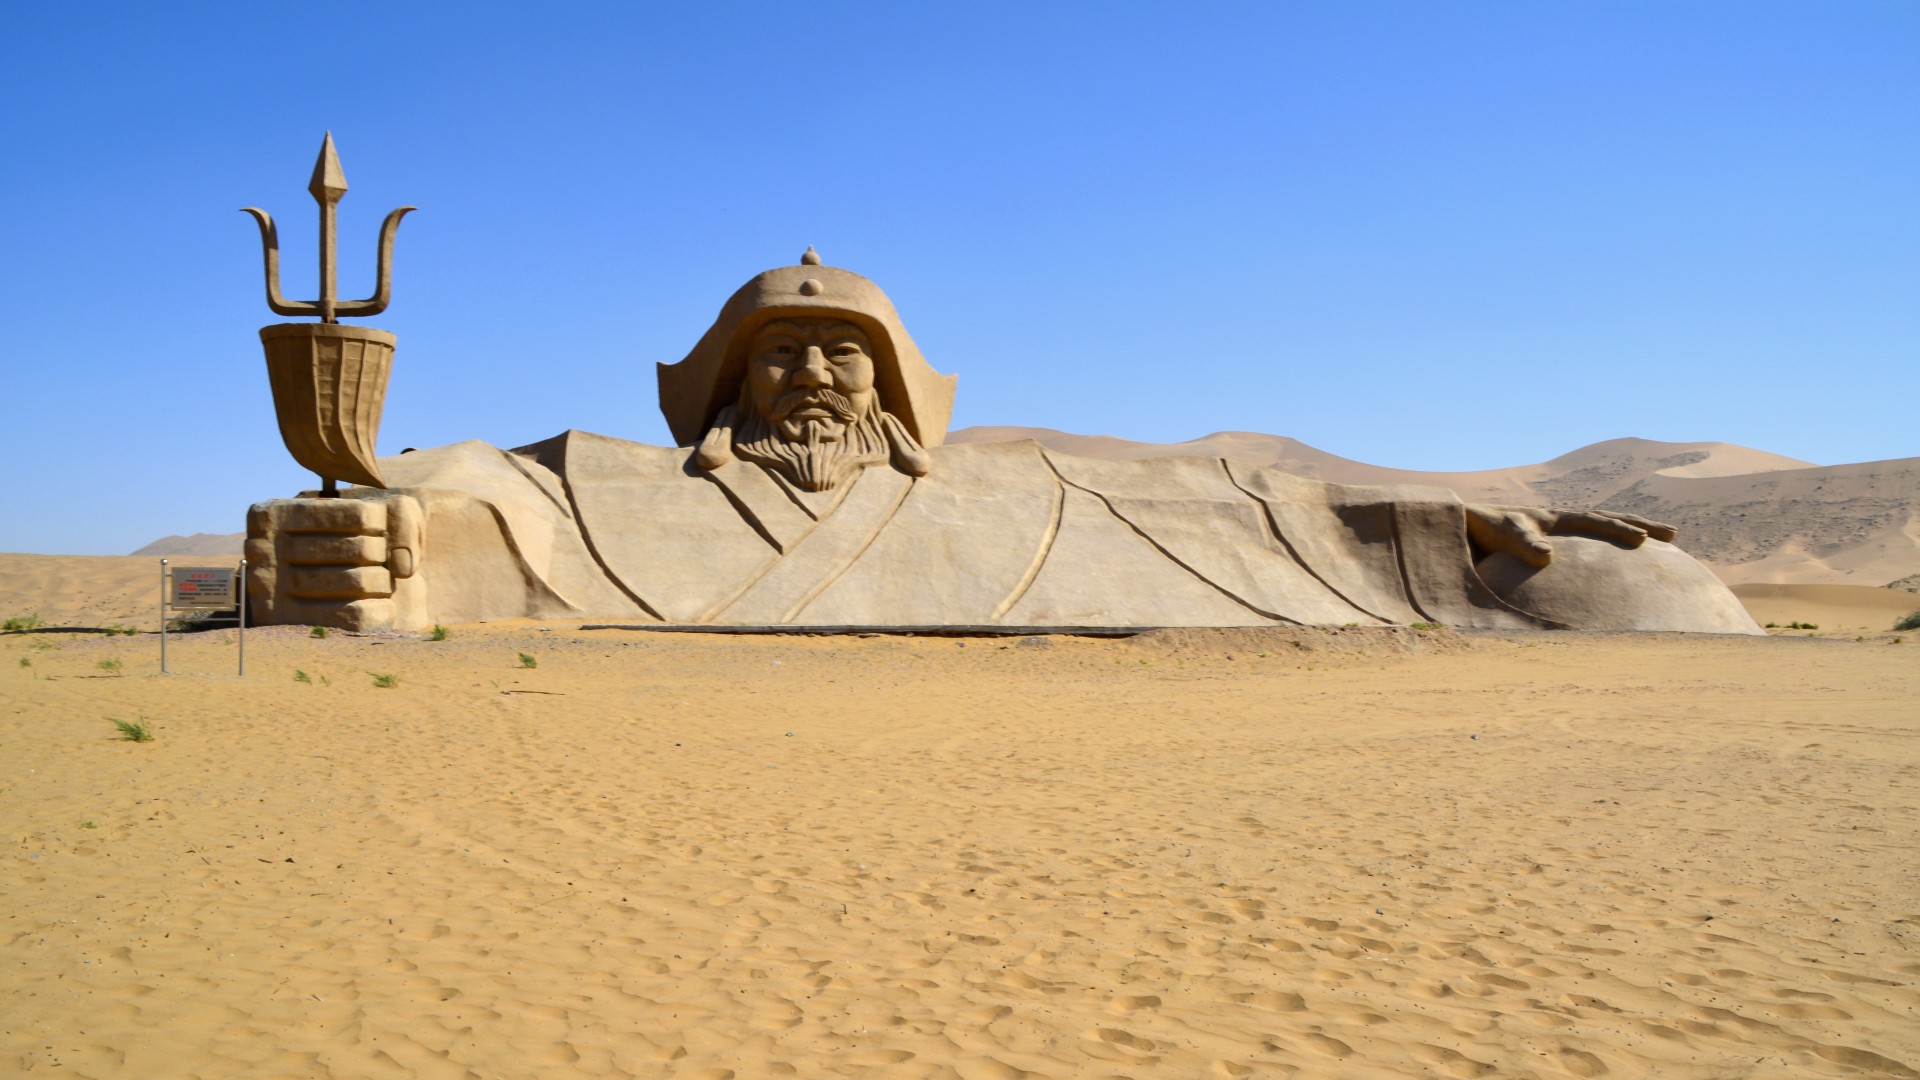 La enorme estatua de Genghis Khan en medio del desierto de Badain Jaran.  Este desierto alberga algunas de las dunas estacionarias más altas de la Tierra, algunas de las cuales alcanzan una altura de más de 500 metros.  El desierto presenta más de 100 lagos que se encuentran entre las dunas, algunos de los cuales son de agua dulce mientras que otros son extremadamente salinos.